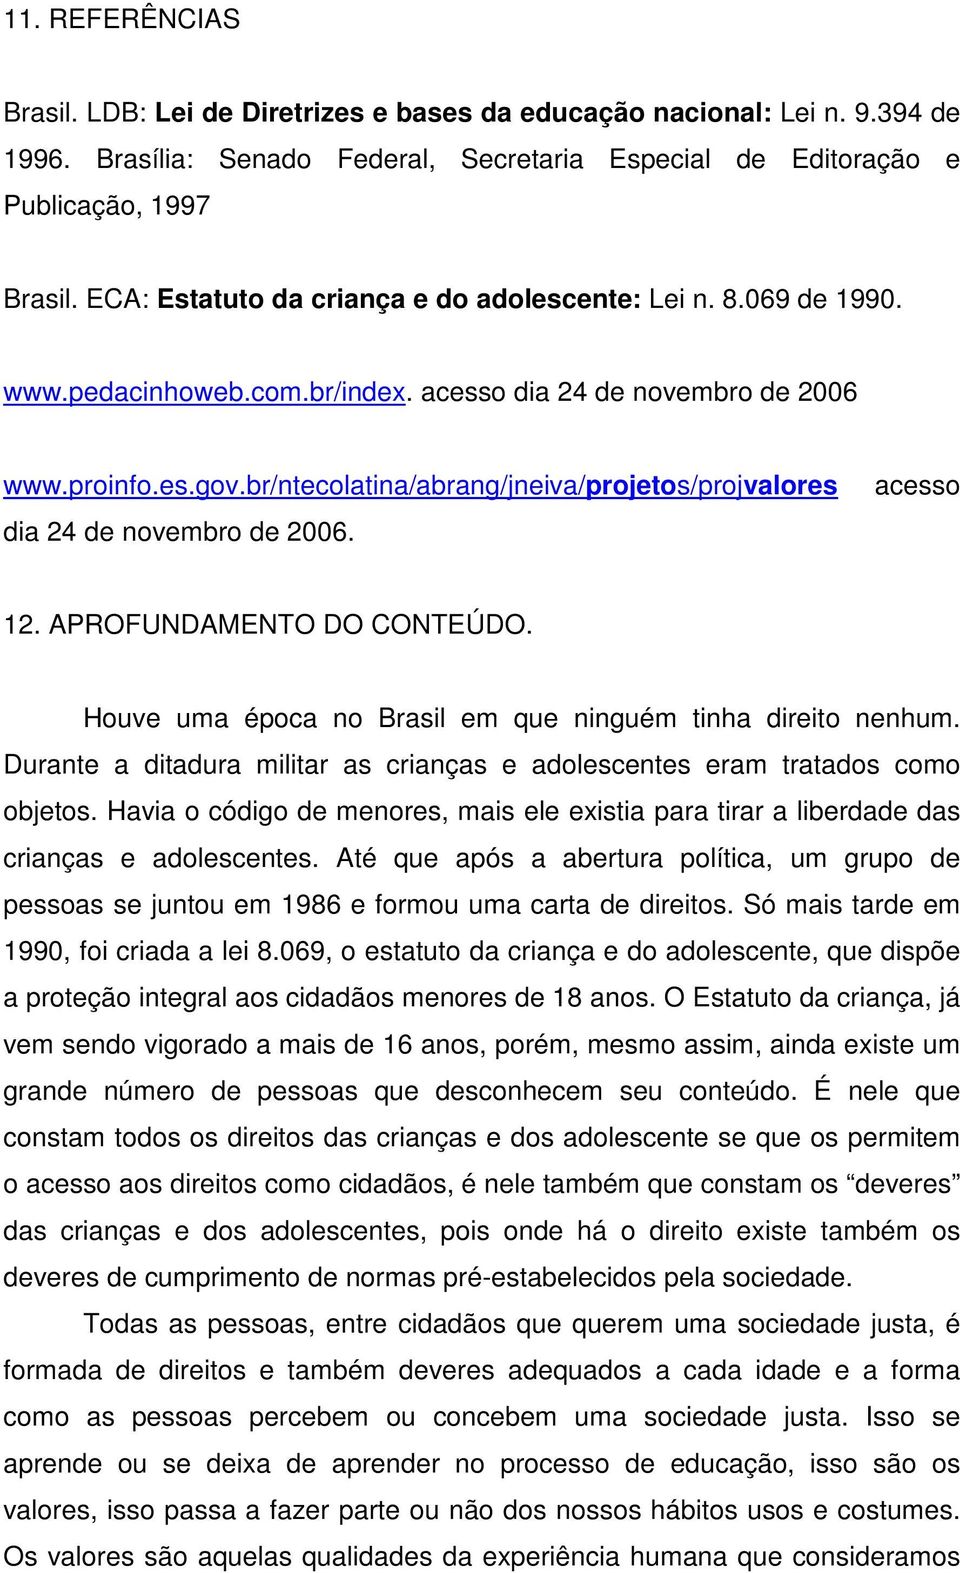 br/ntecolatina/abrang/jneiva/projetos/projvalores dia 24 de novembro de 2006. acesso 12. APROFUNDAMENTO DO CONTEÚDO. Houve uma época no Brasil em que ninguém tinha direito nenhum.